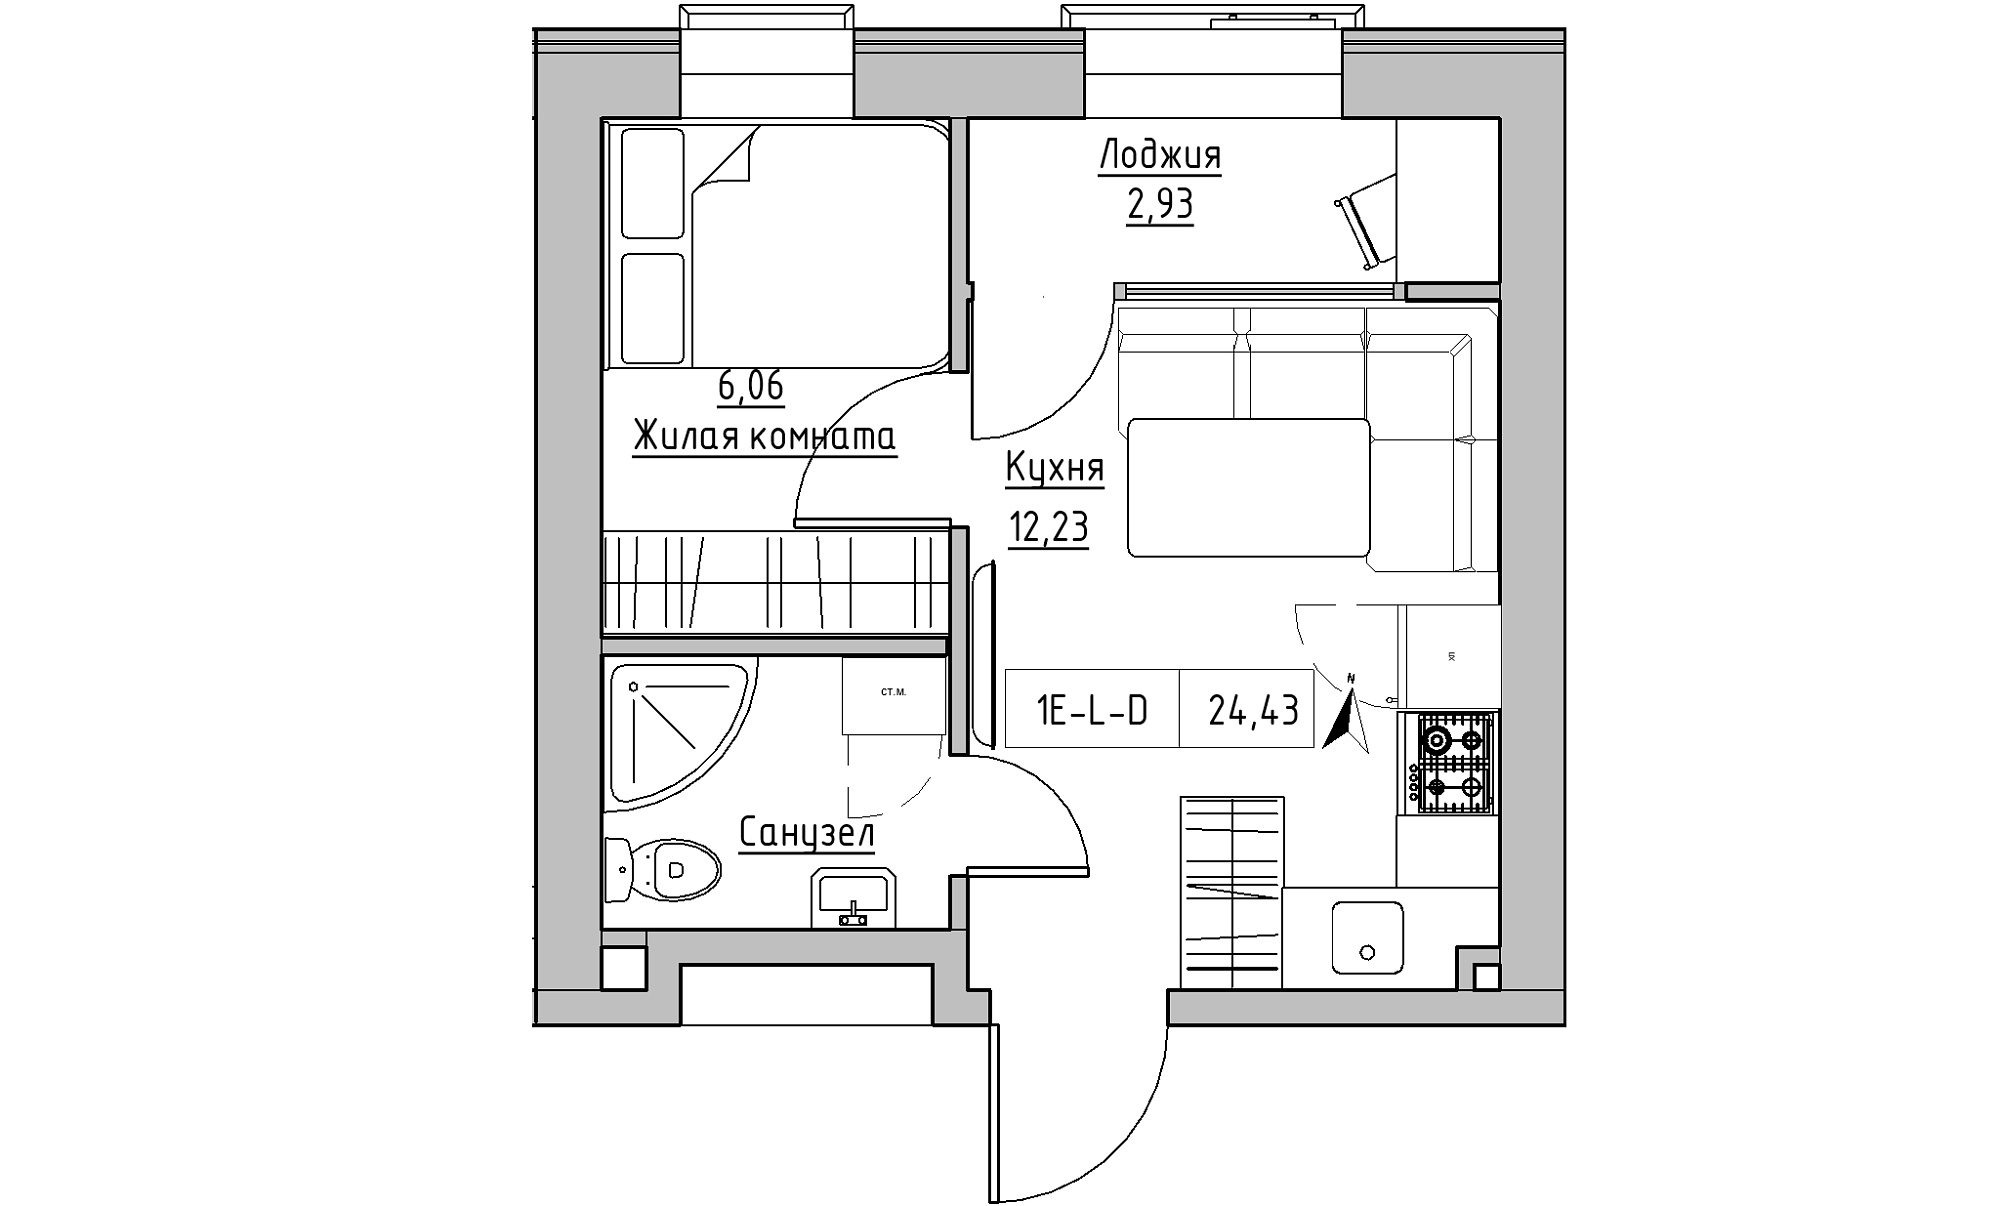 Планировка 1-к квартира площей 24.43м2, KS-023-02/0016.